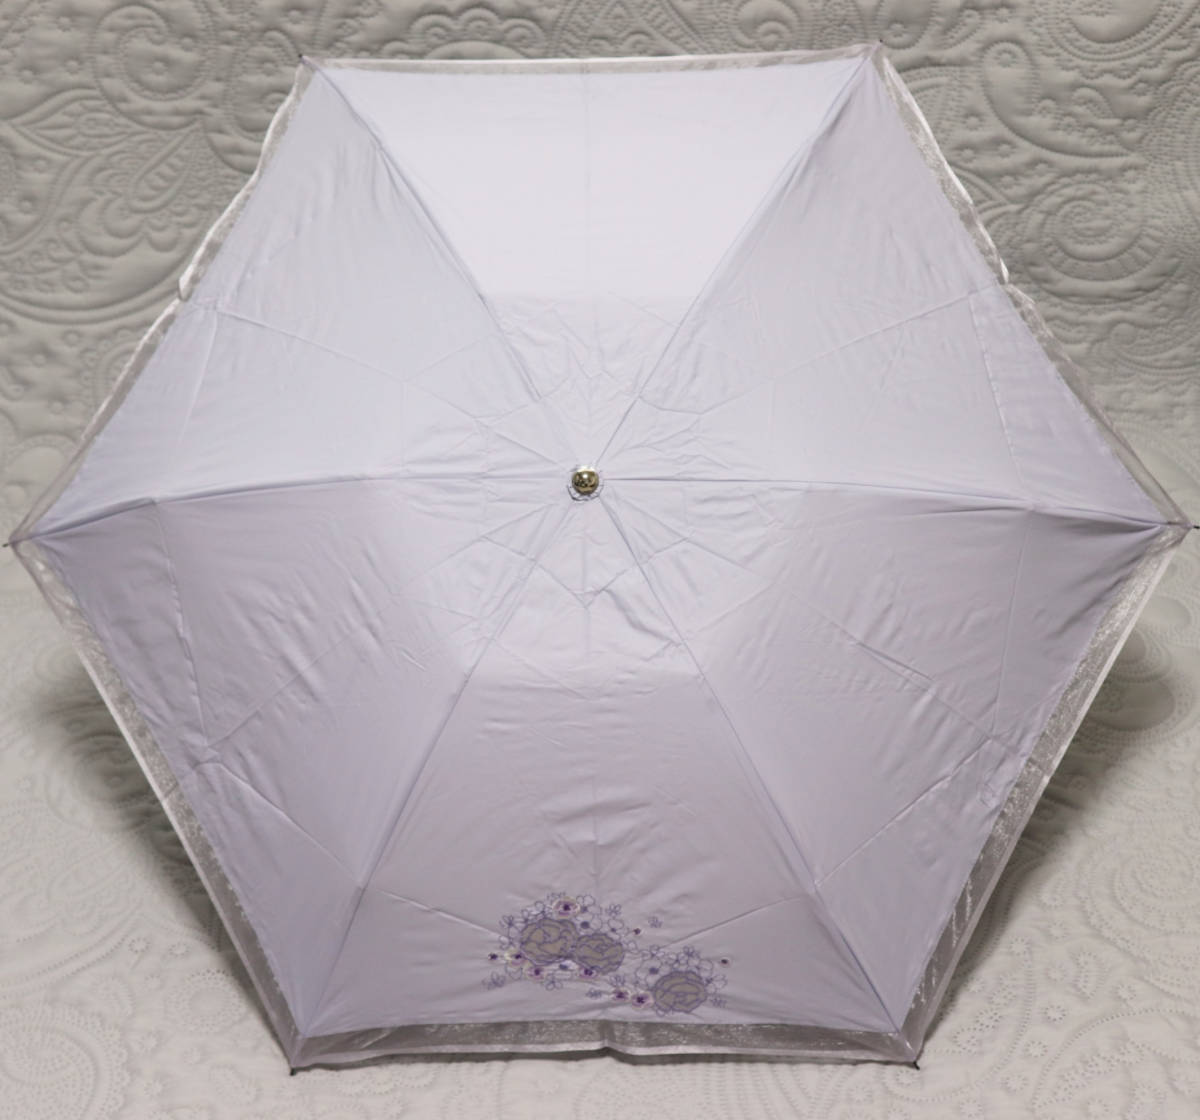 新品タグ付き【Fioretta yoko takeuchi】晴雨兼用折りたたみ傘 透け感 レース刺繍 雨傘 日傘 ラベンダー v3312_画像3